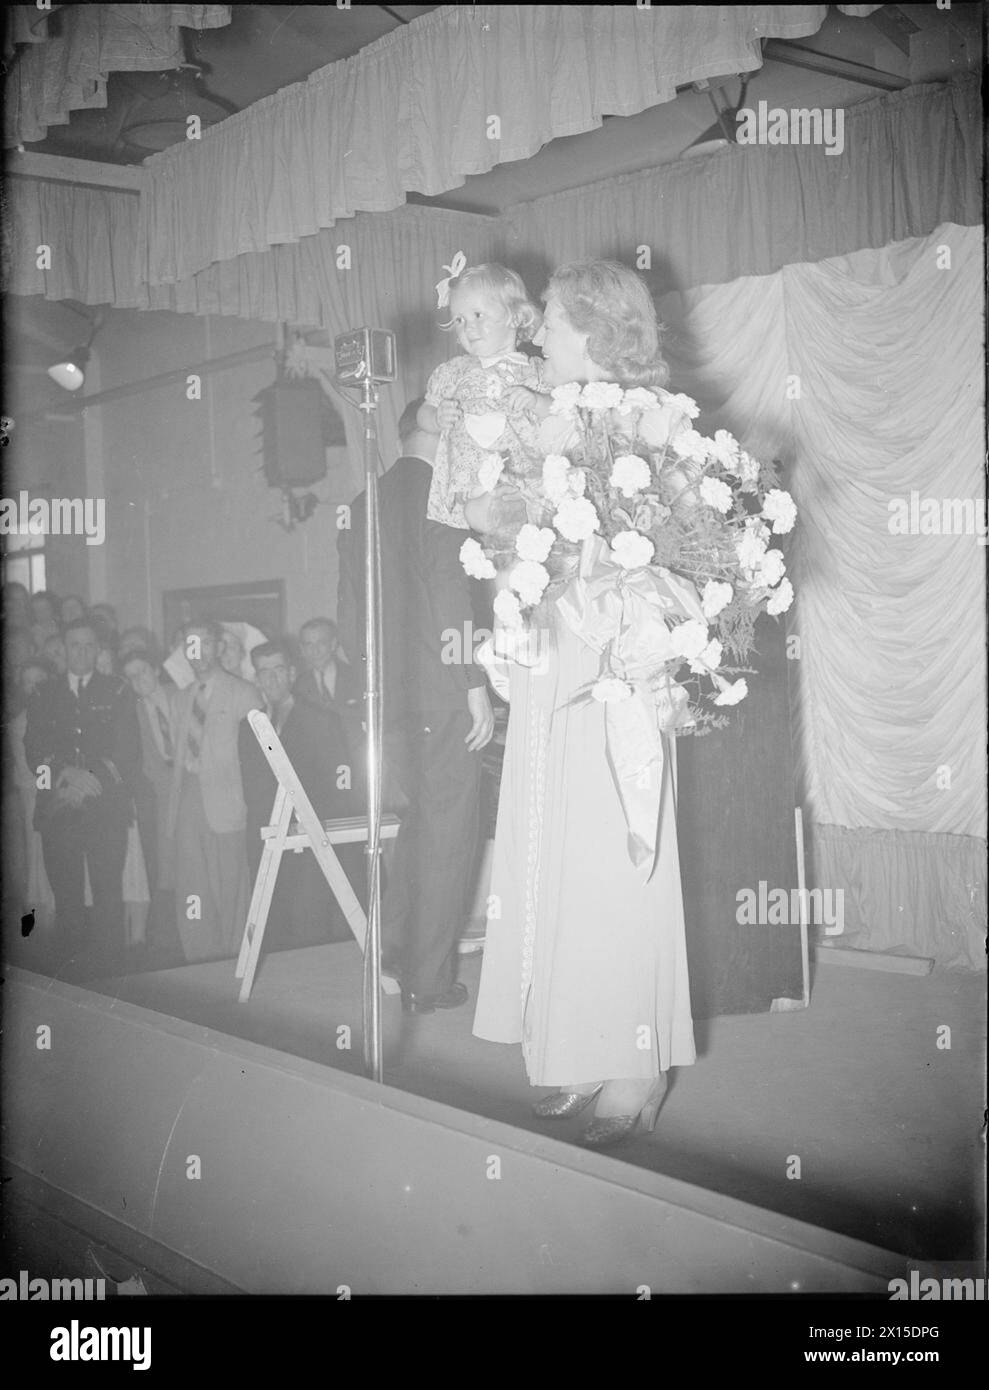 GRACIE FIELDS SINGT IN Einer MUNITIONSFABRIK, Großbritannien, 1941 - Singer Gracie Fields steht am Mikrofon auf einer Bühne einer Kampfmittelfabrik irgendwo in Großbritannien. In ihren Armen hält sie die Tochter eines Kriegsarbeiters und einen großen Blumenstrauß, den ihr das kleine Mädchen gerade nach ihrer Vorstellung auf den Fabrikfeldern, Gracie, überreicht hat Stockfoto